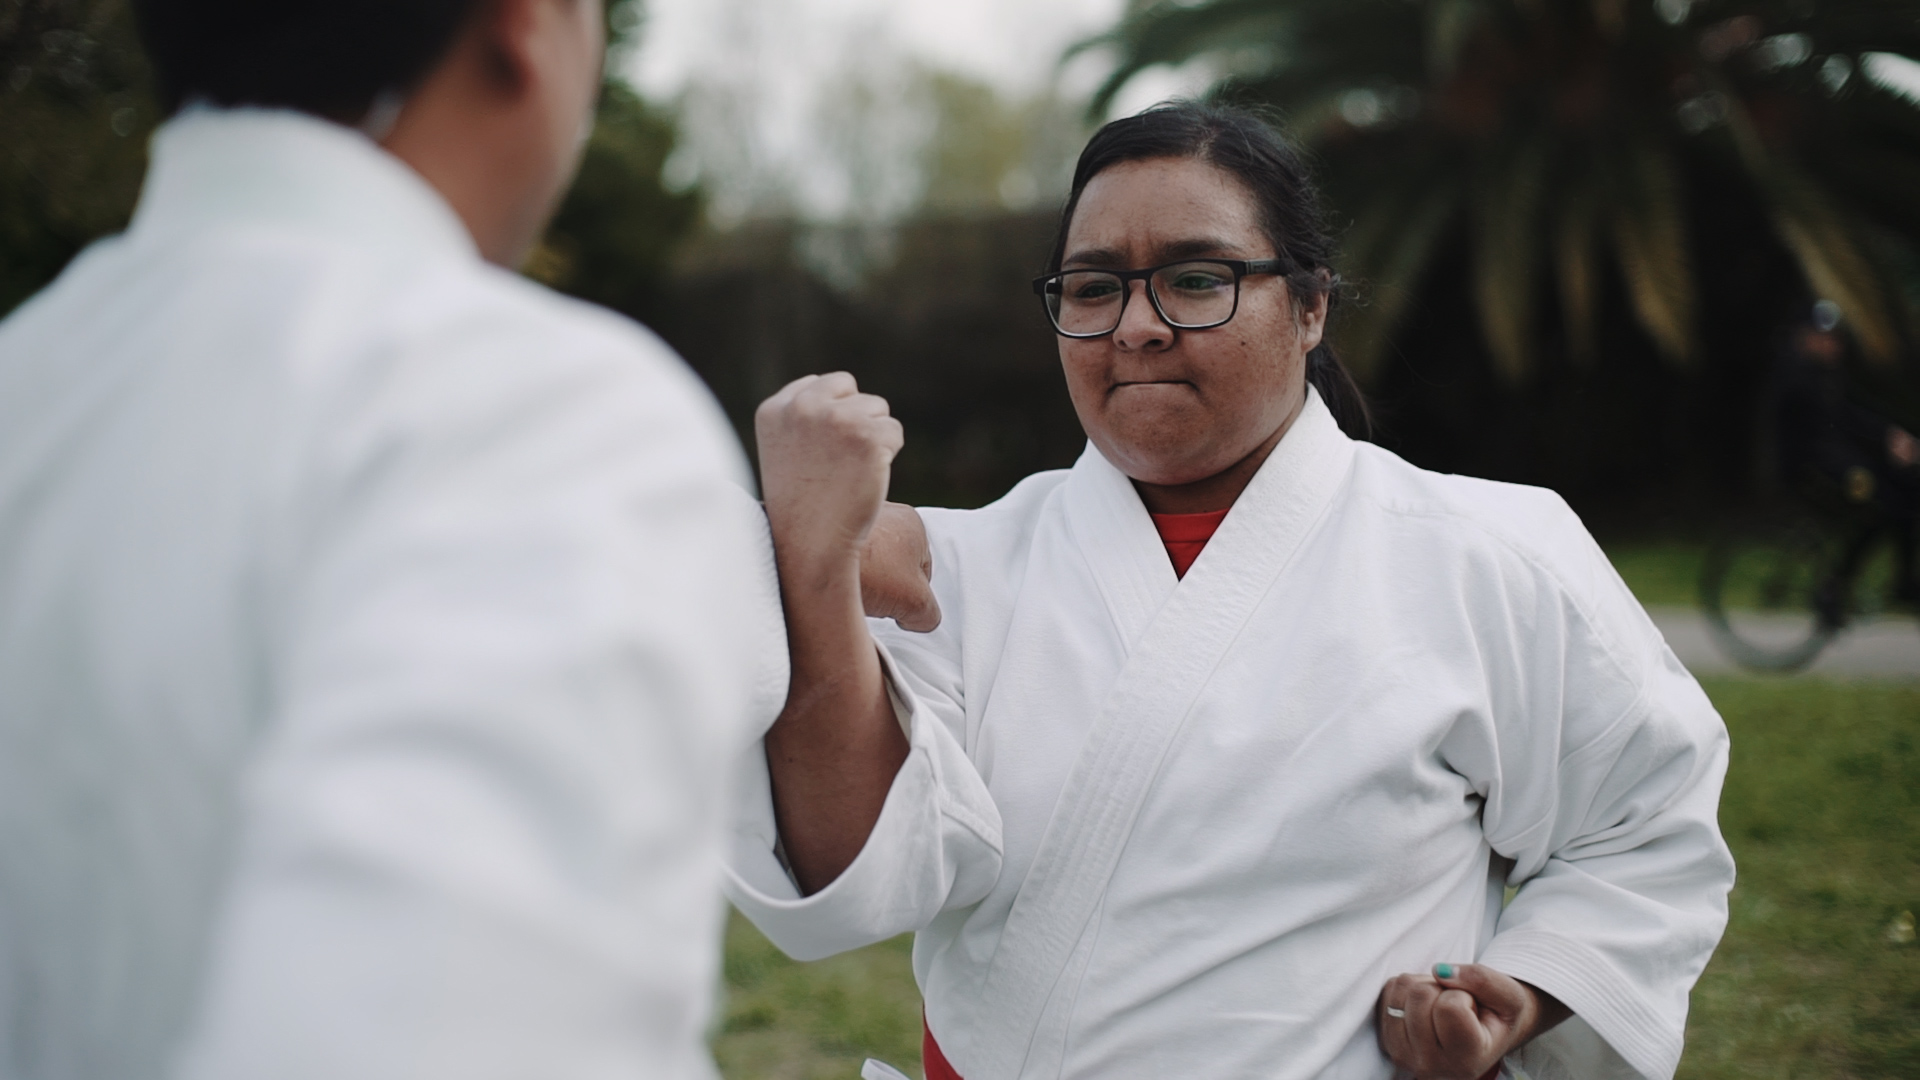 Ruth practica deportes marciales y es diseñadora gráfica. Tras superar el shock del diagnóstico, hoy es activista como persona con Chagas/ACIJ